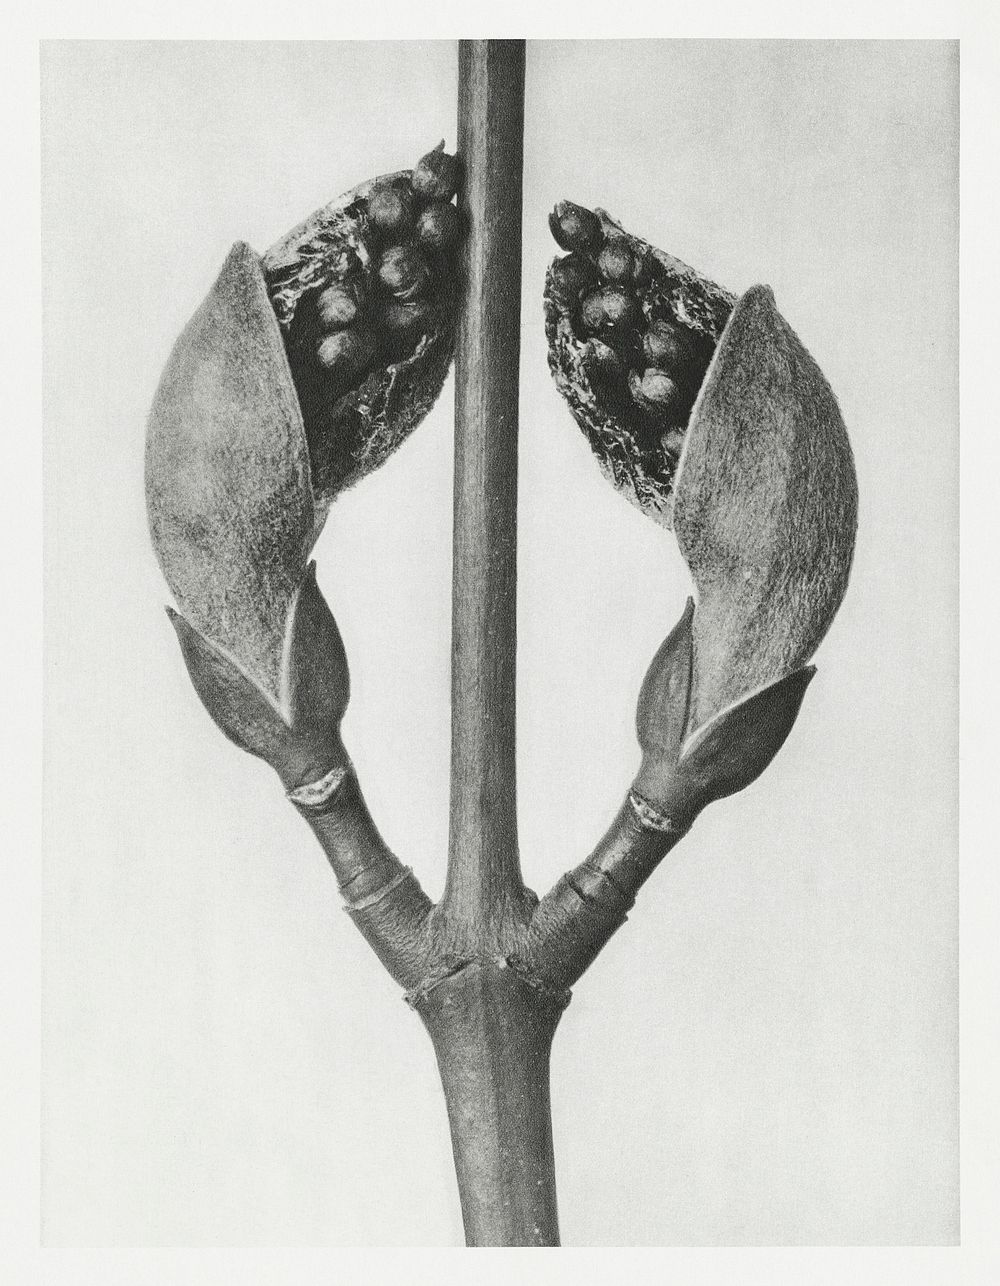 Acer Rufinerve (Maple Tree) enlarged 10 times from Urformen der Kunst (1928) by Karl Blossfeldt. Original from The…